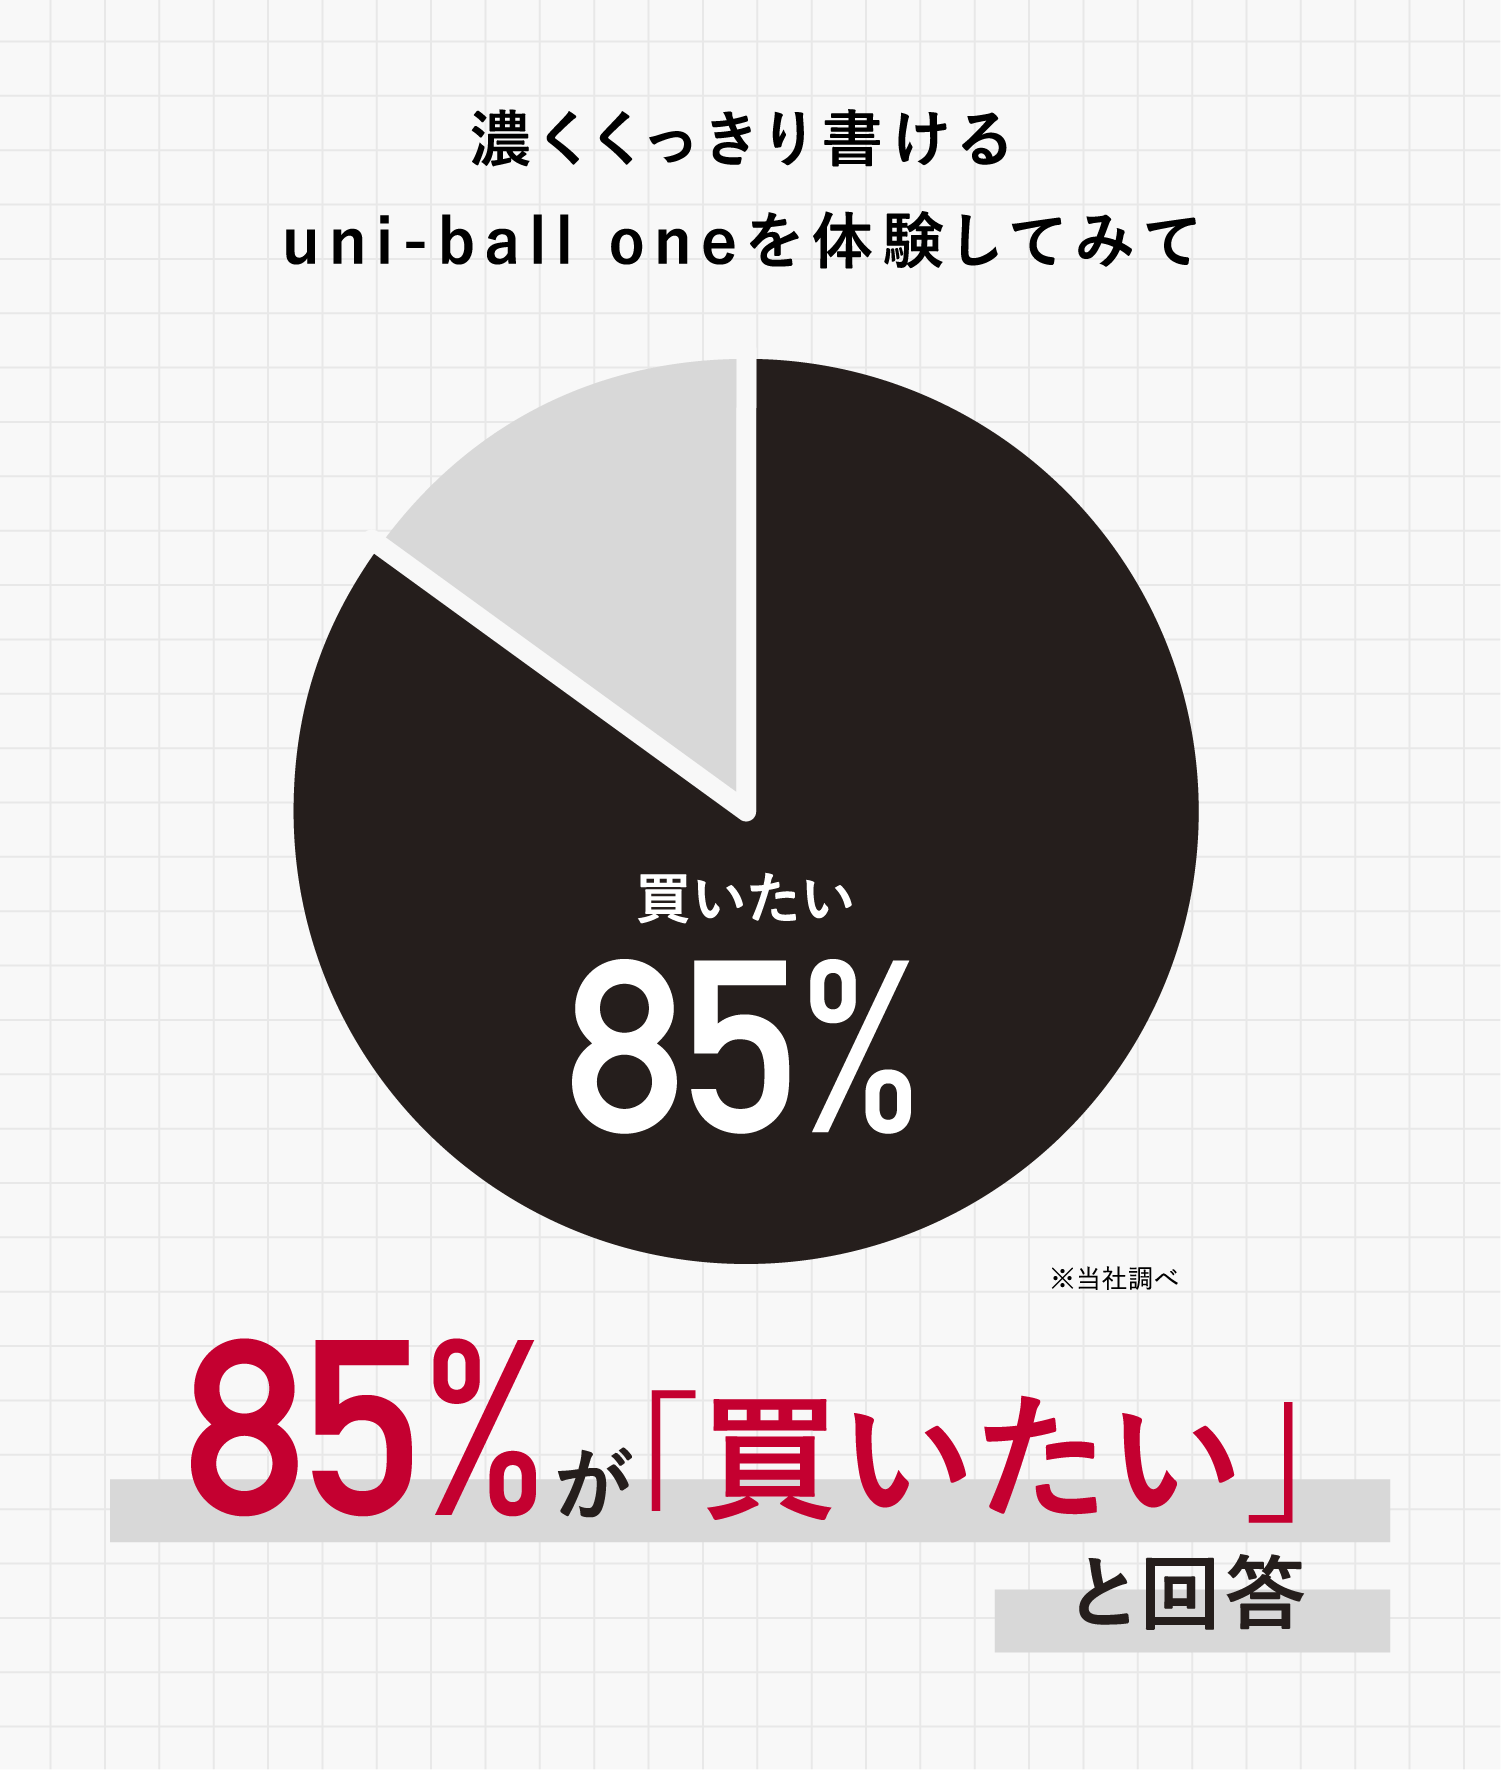 濃くくっきり書ける uni-ball one を体験してみて　85%が「買いたい」と回答